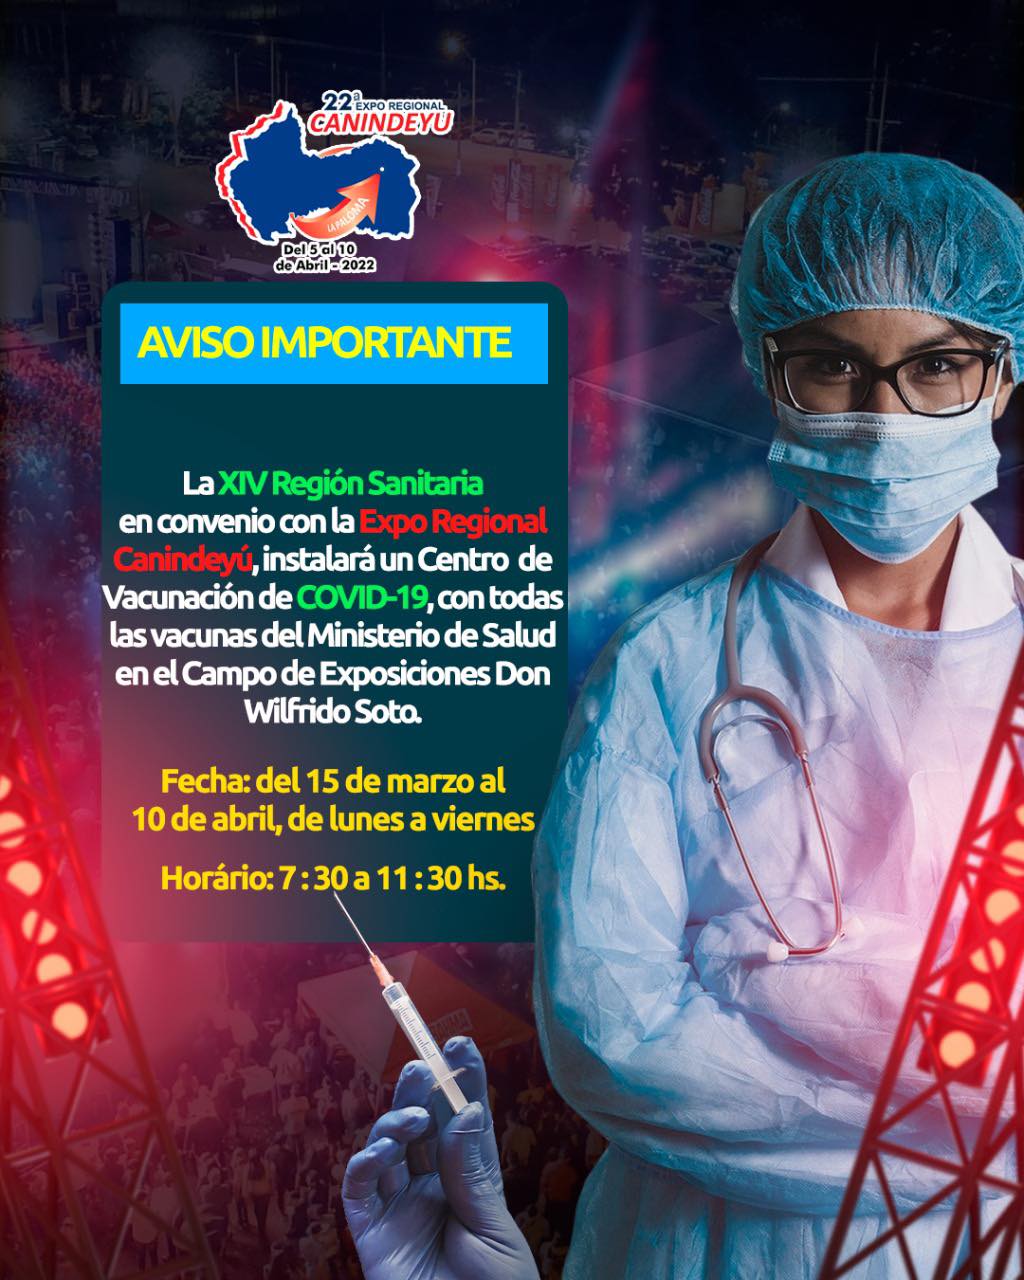 Desde la Fecha se habilita el Centro de Vacunación en el Campo Ferial Don Wilfrido Soto de La Paloma